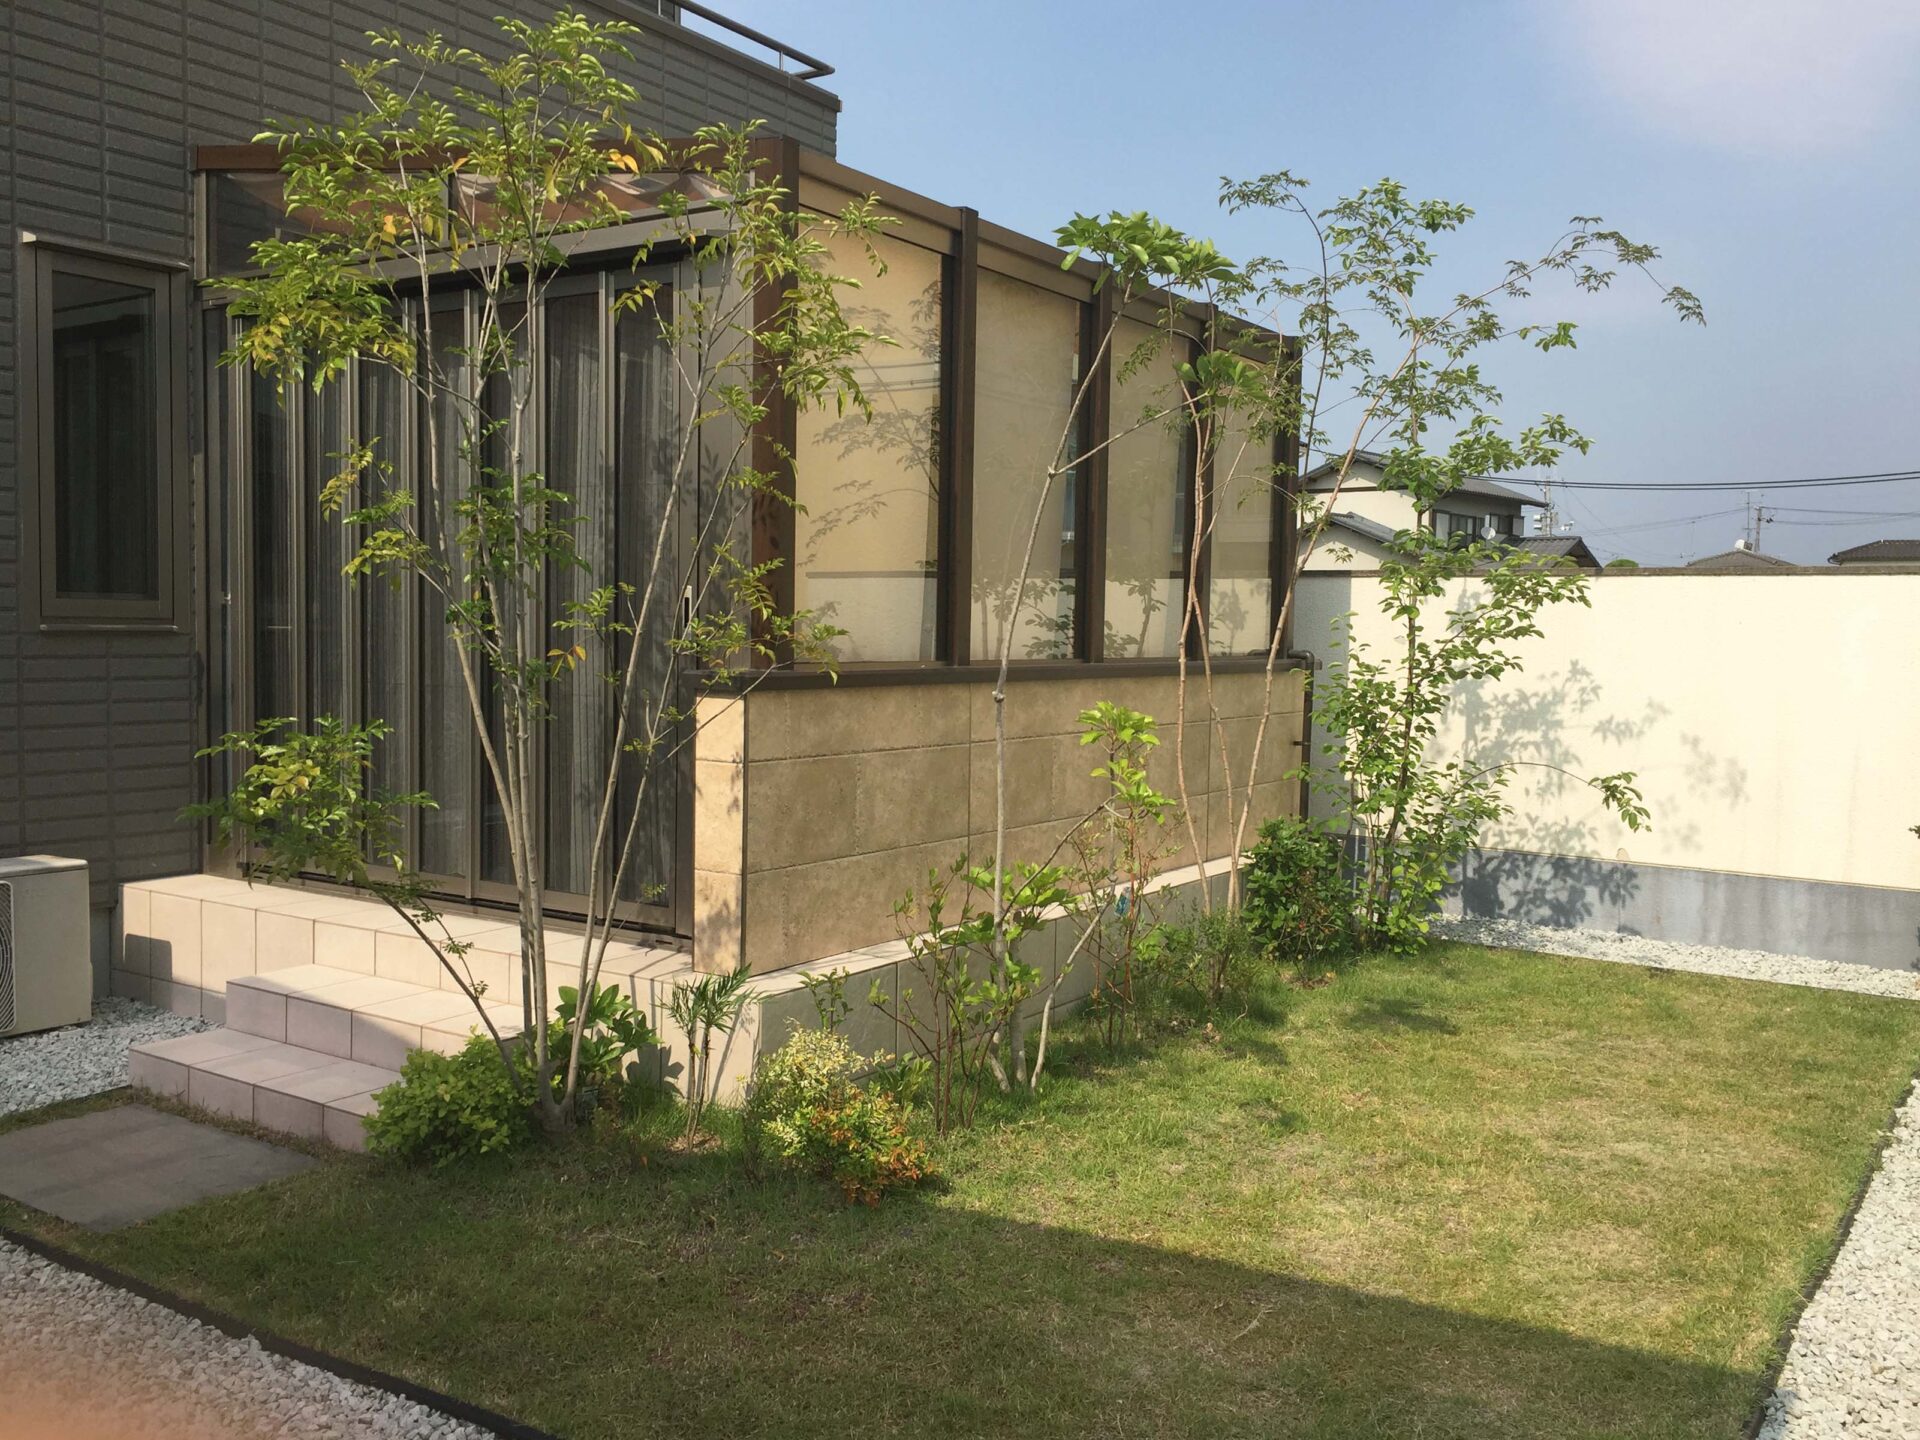 ガーデンテラス スマーレでお住まいとお庭をつなげる快適なアウトドアリビングを 岡山市中区k様 岡山で建材 エクステリアの事なら三井商会へ